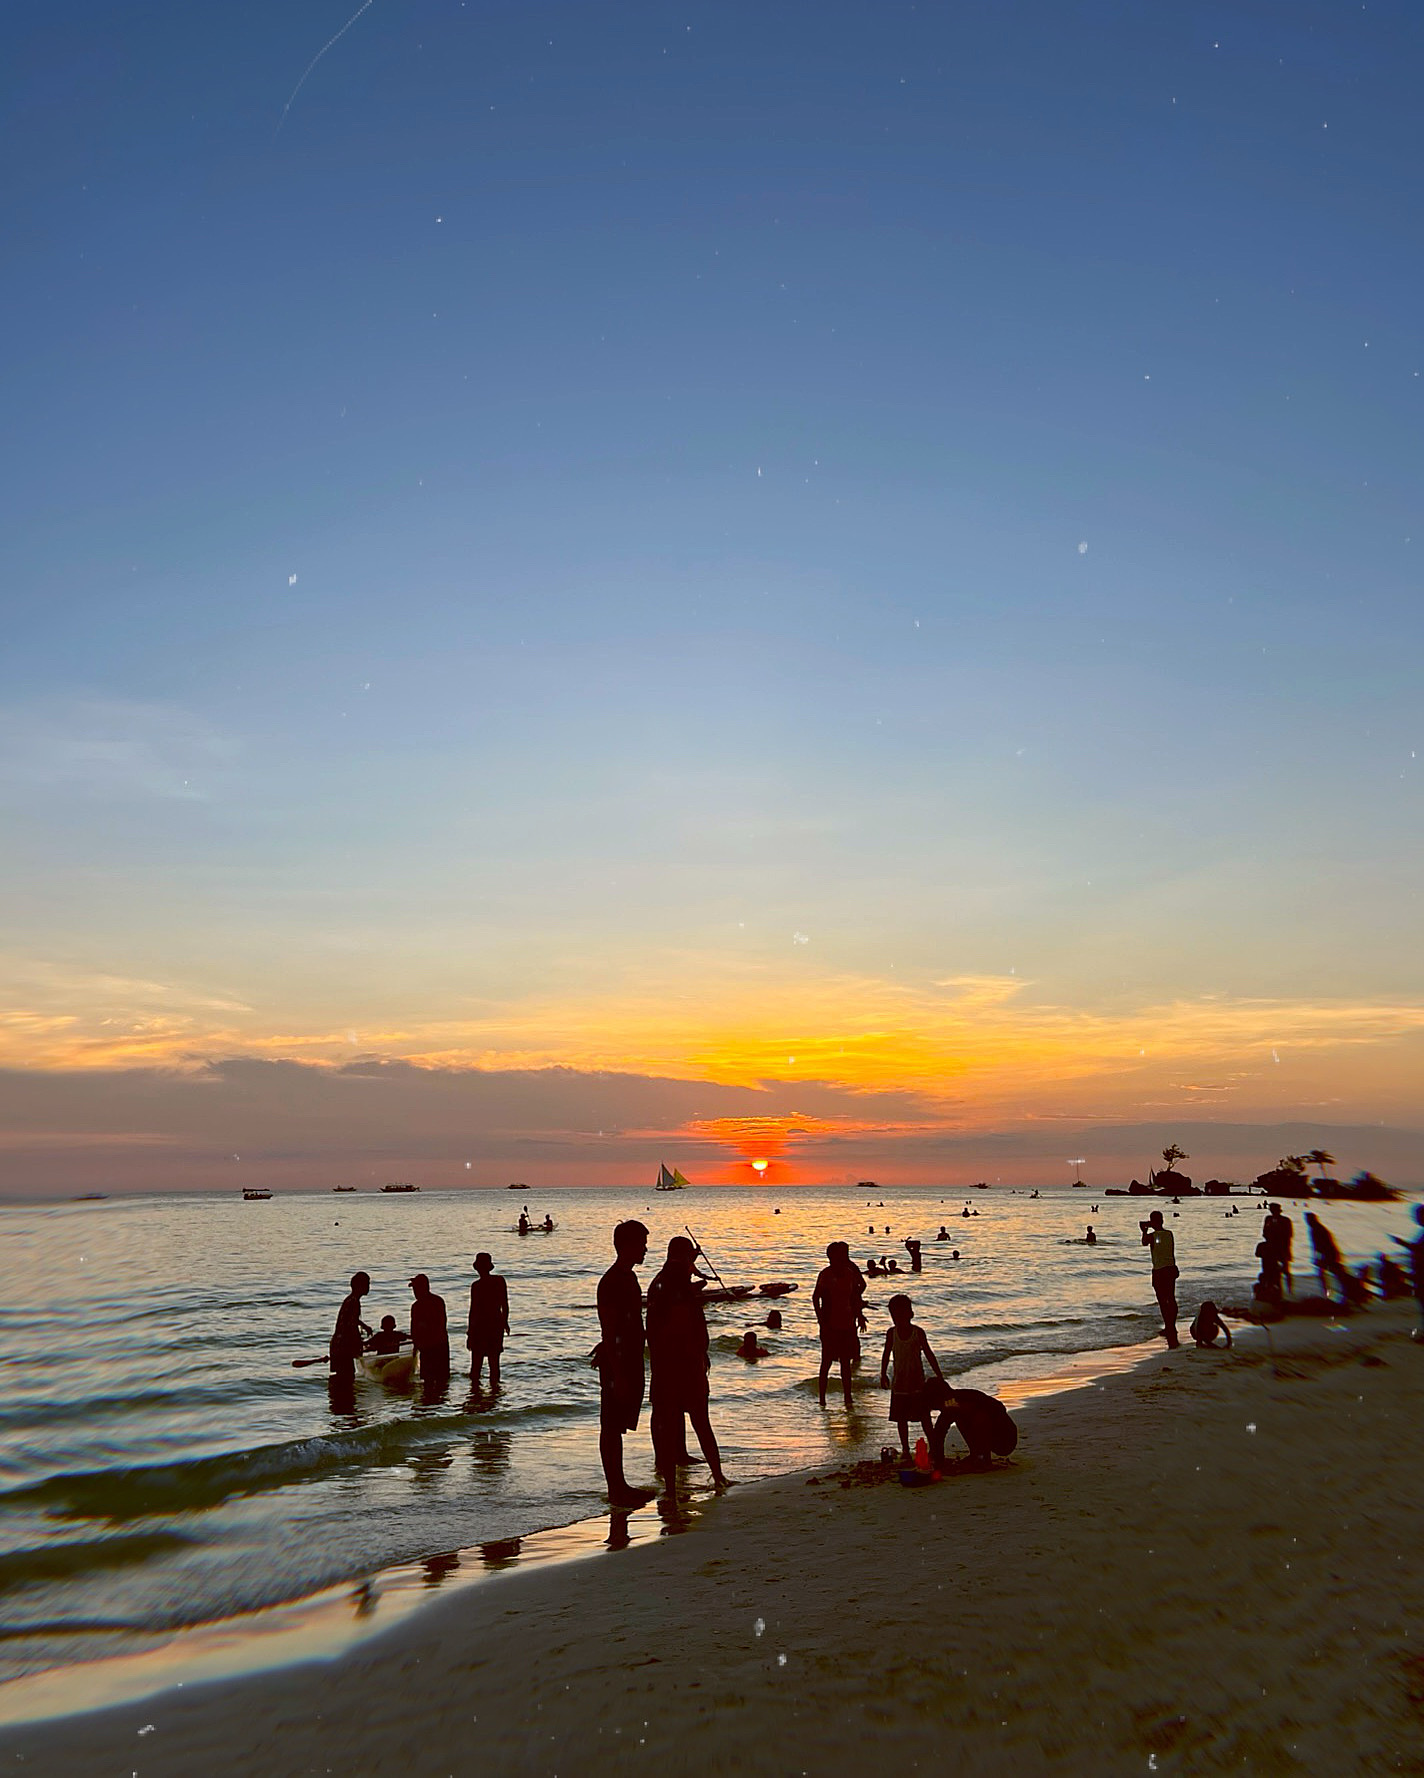 the famous Boracay sunset